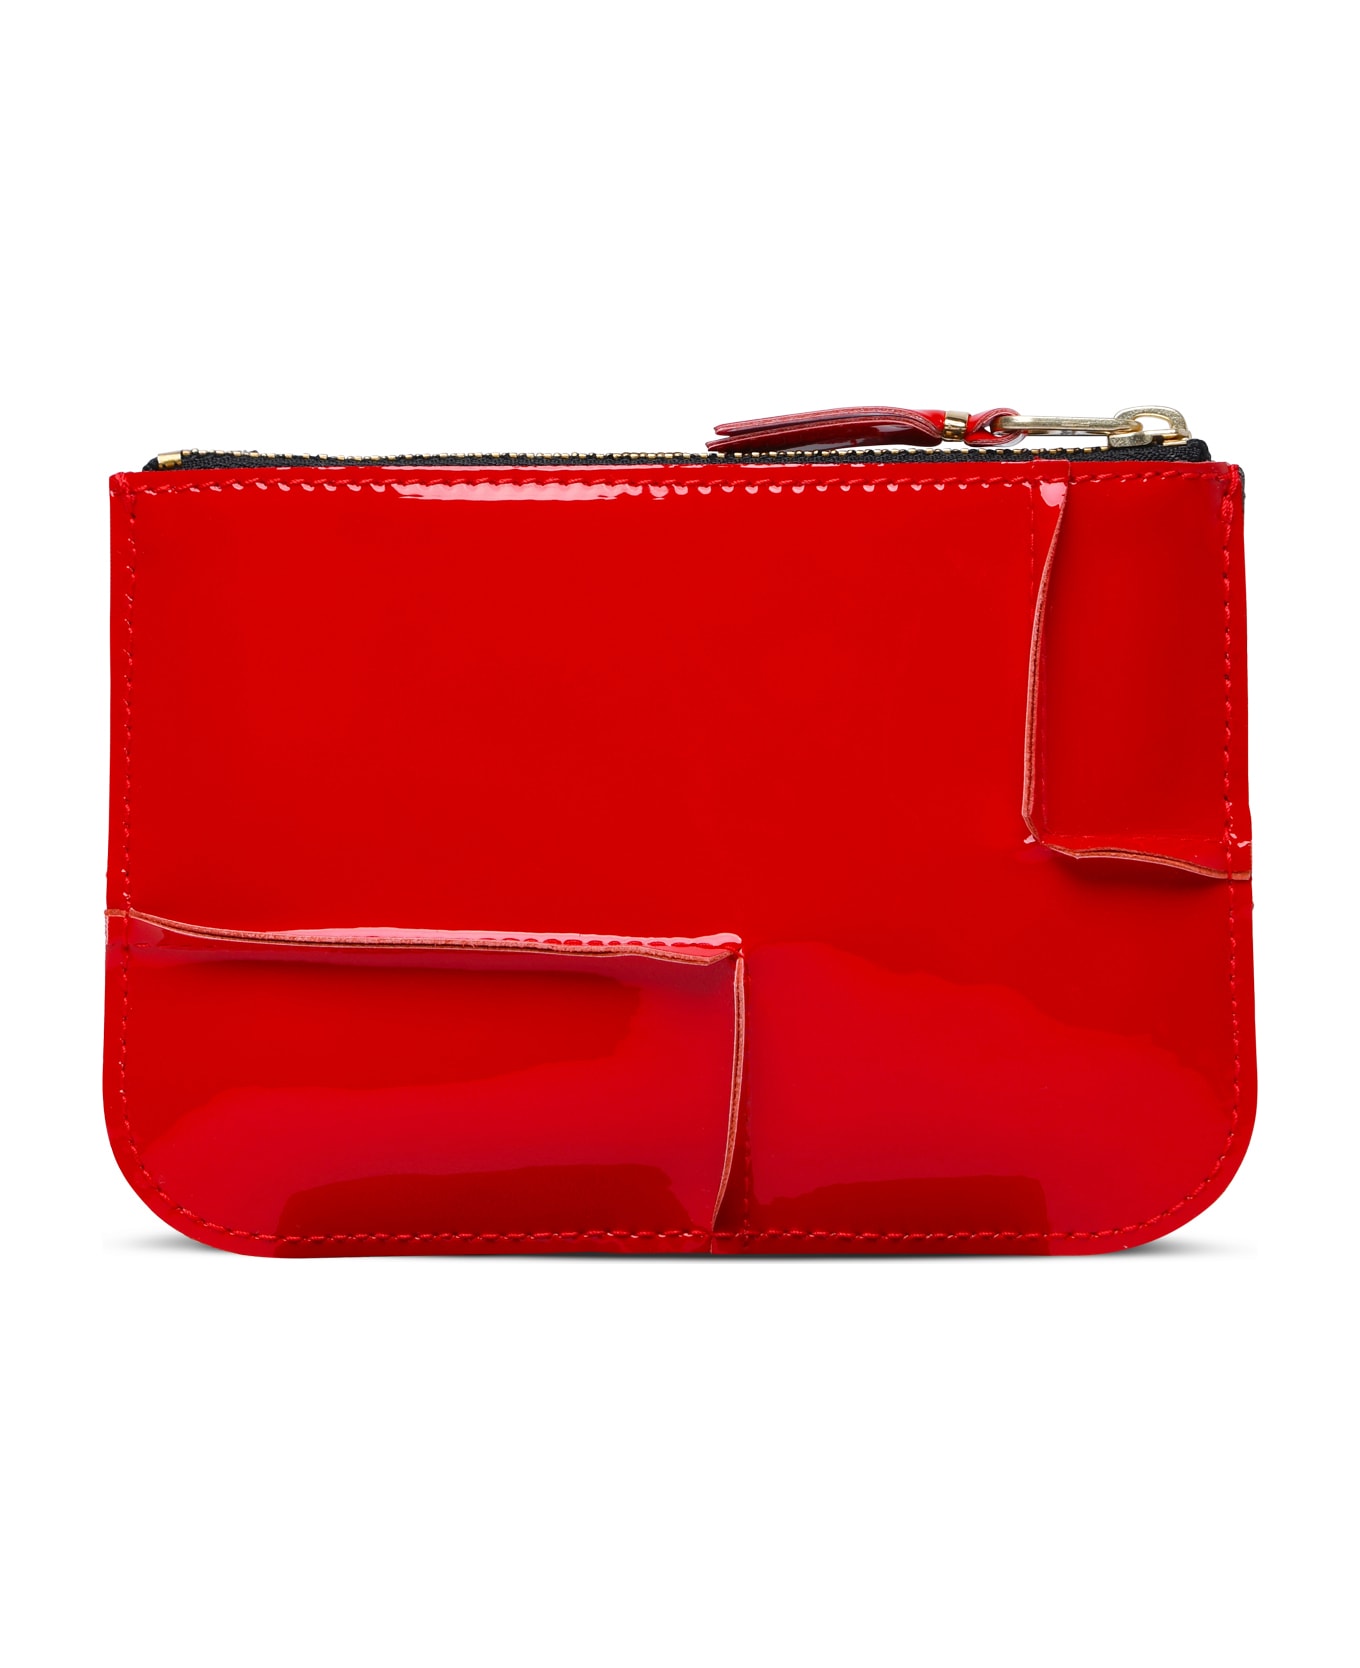 Comme des Garçons Wallet 'medley' Red Leather Card Holder - Red